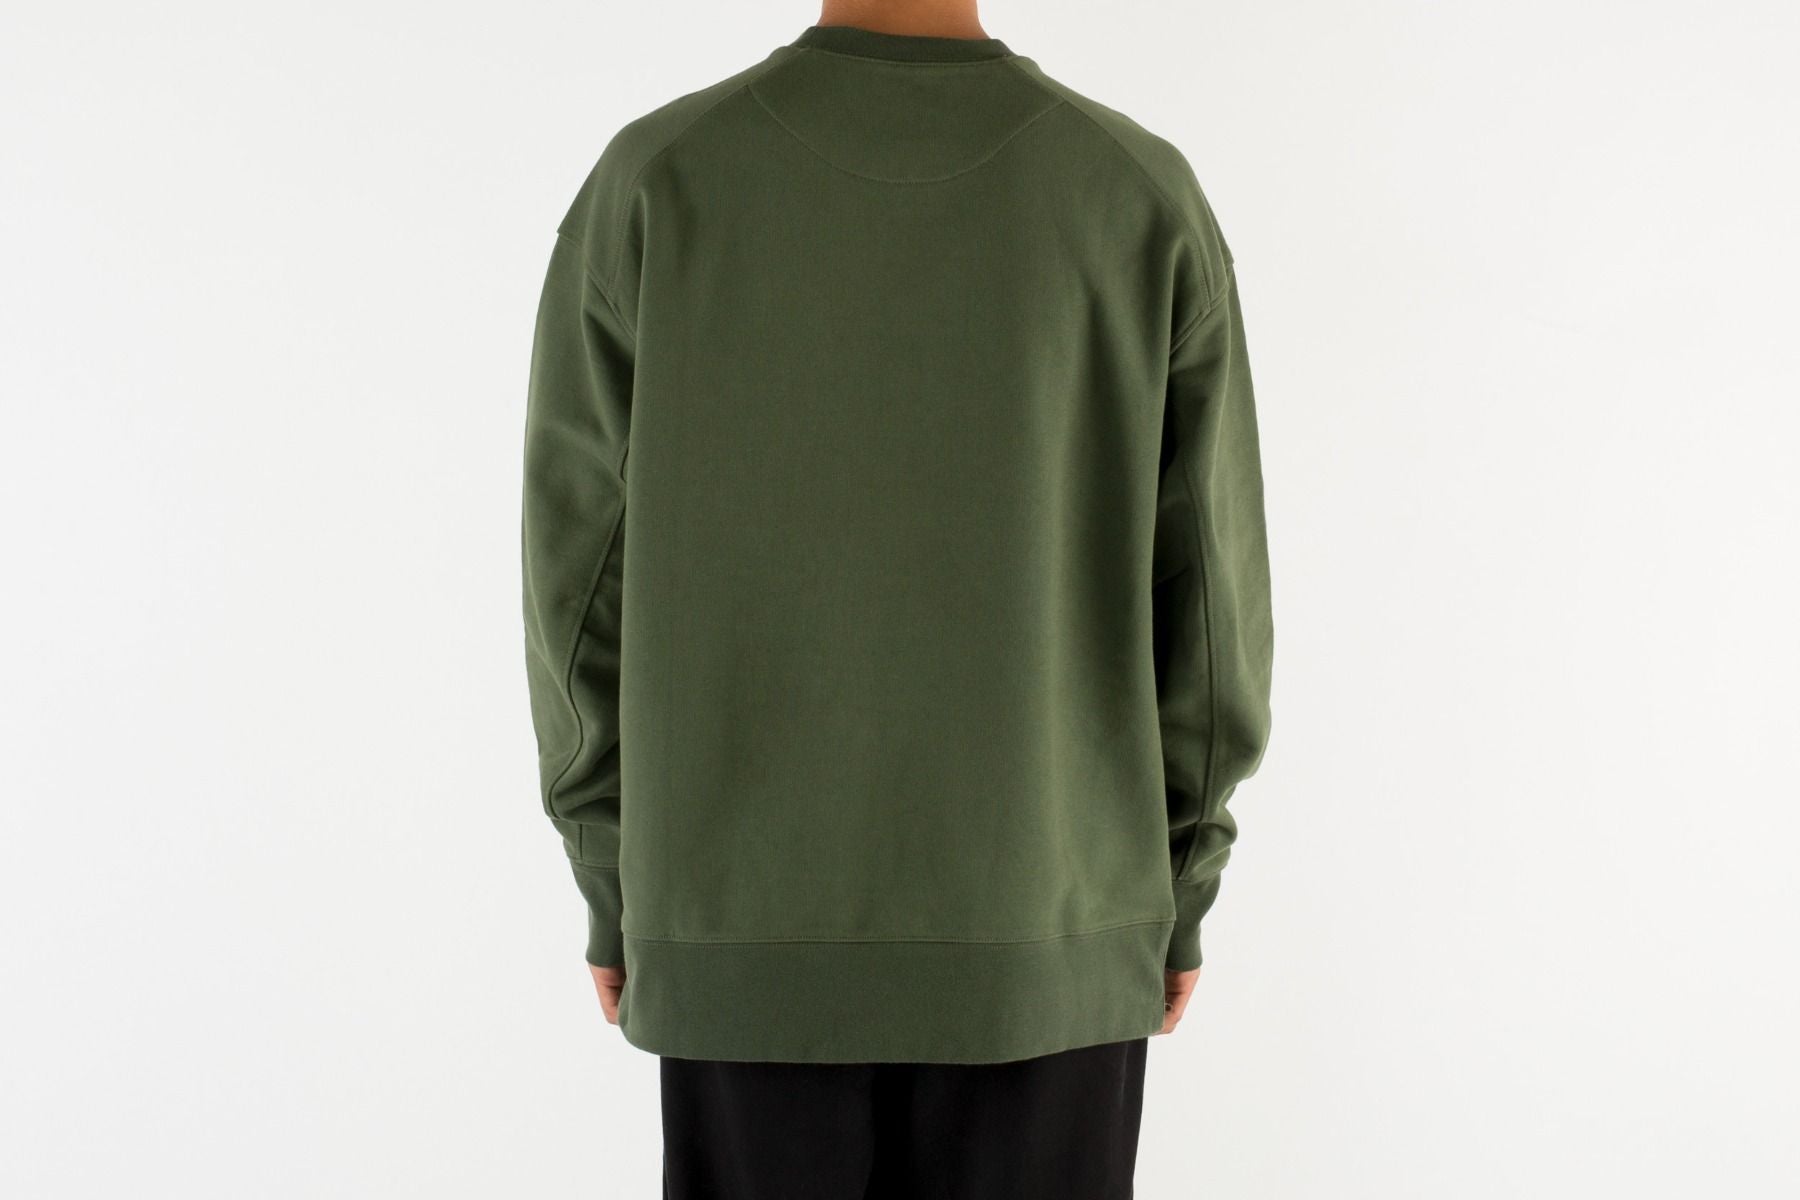 Y-3 Green Crewneck Sweatshirt